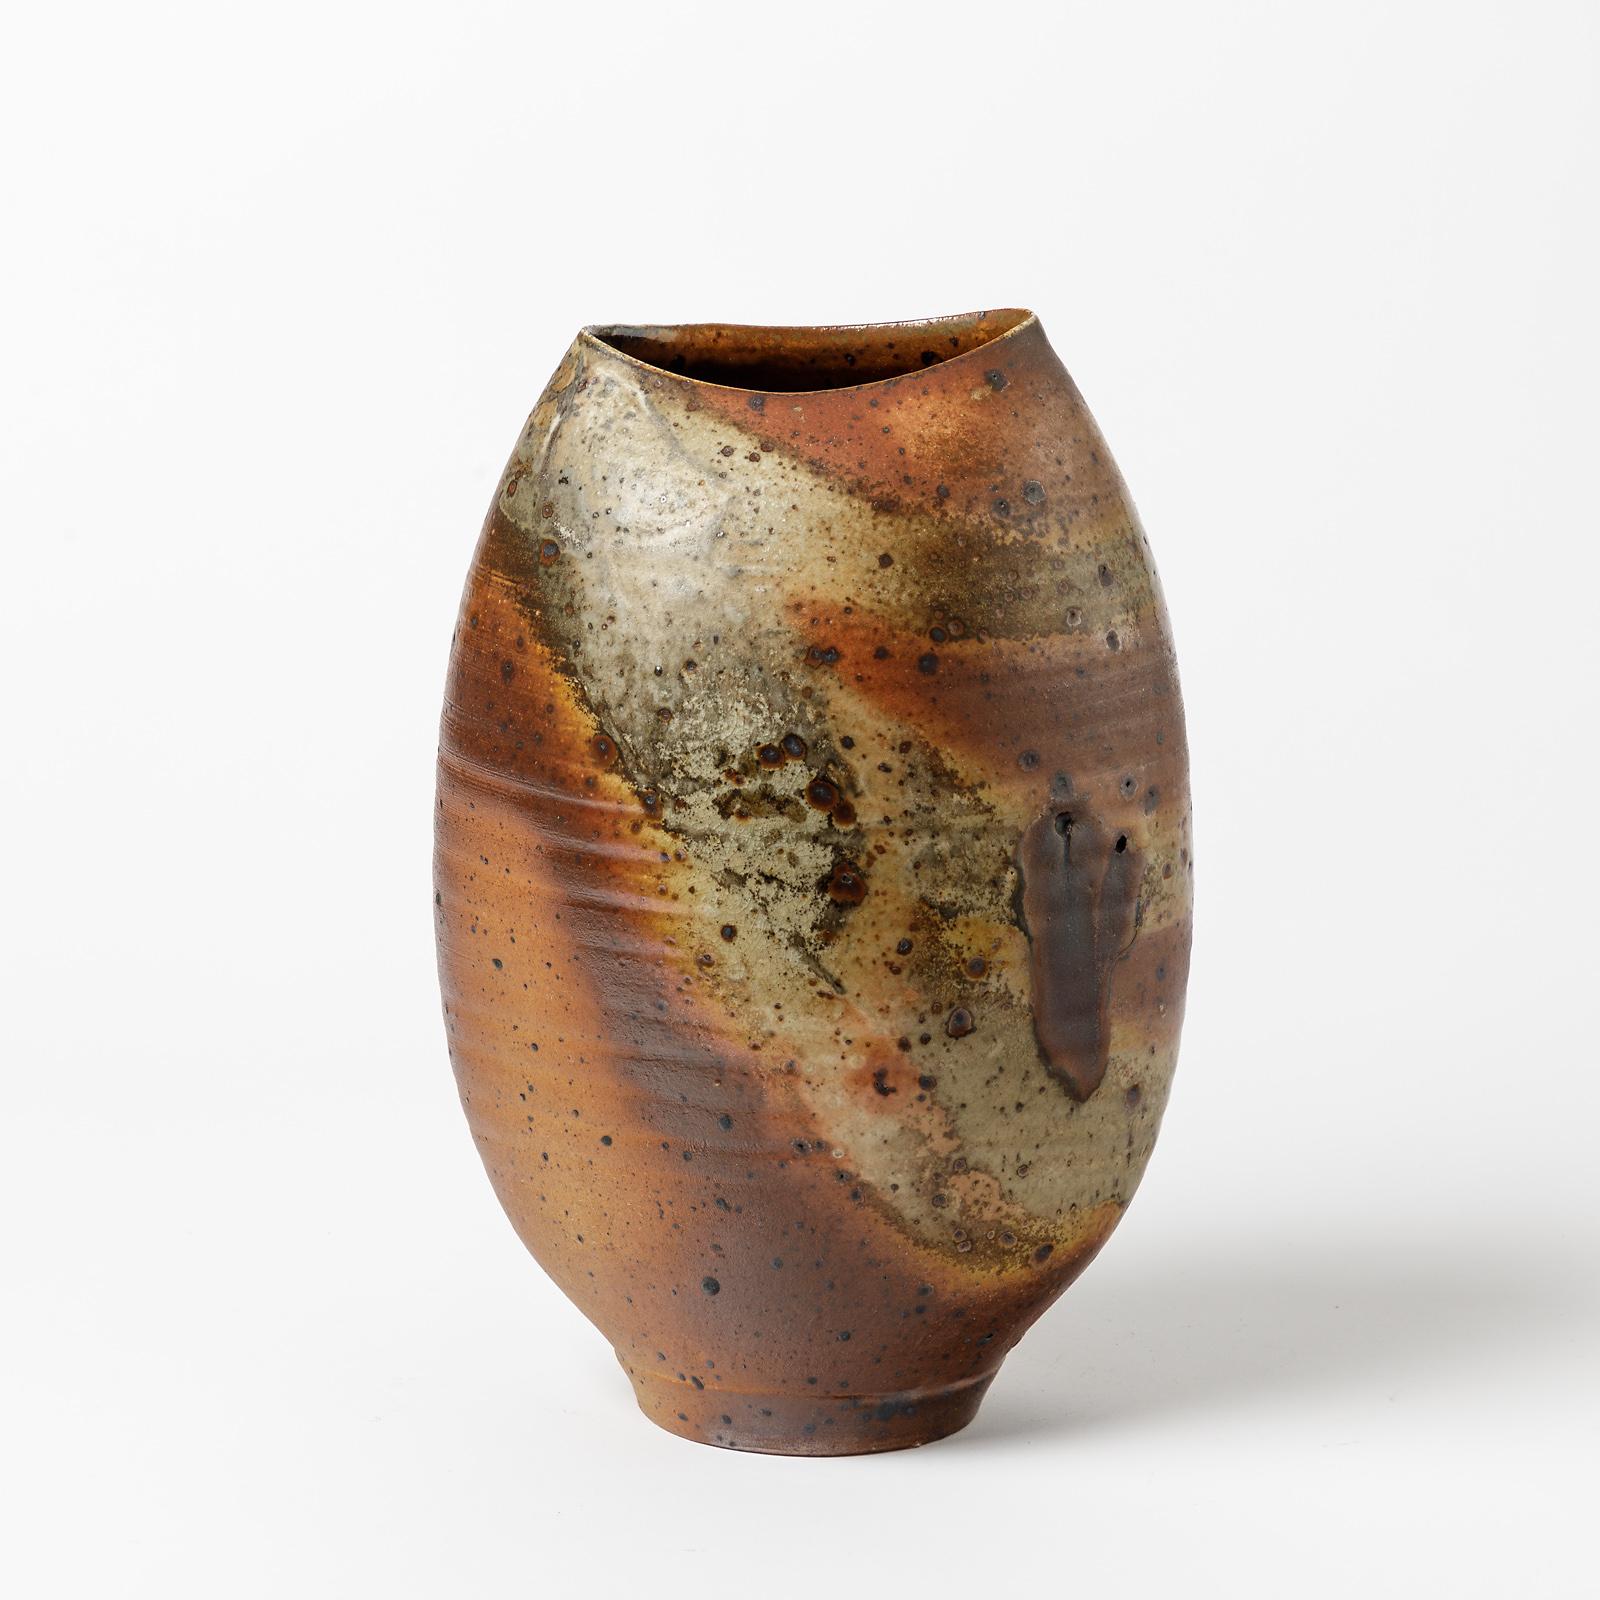 Un vase en céramique avec cuisson au bois par Bruno H' rdy.
Signé à la base.
Conditions d'origine parfaites.
Circa 1970-1980.
Pièce unique.